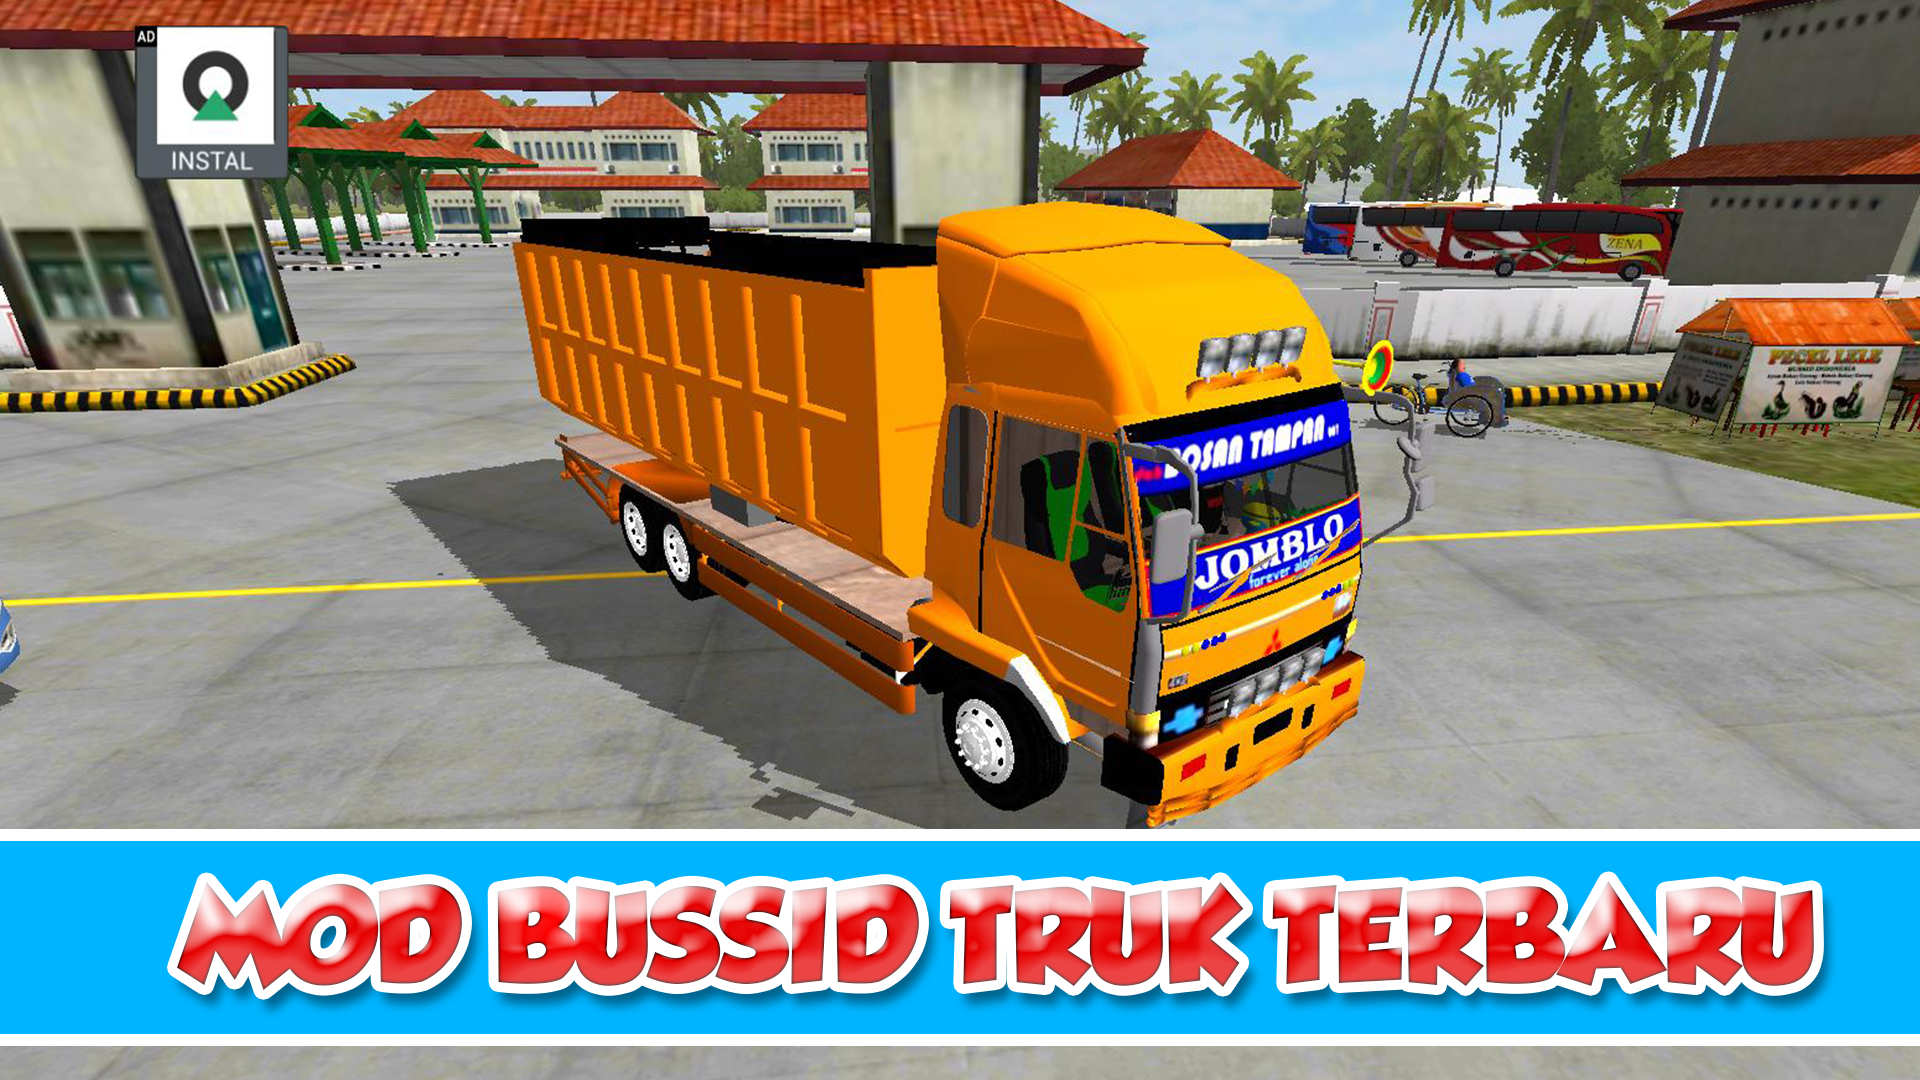 Download 5 MOD BussID Truck Tanpa Password Terbaru 2020